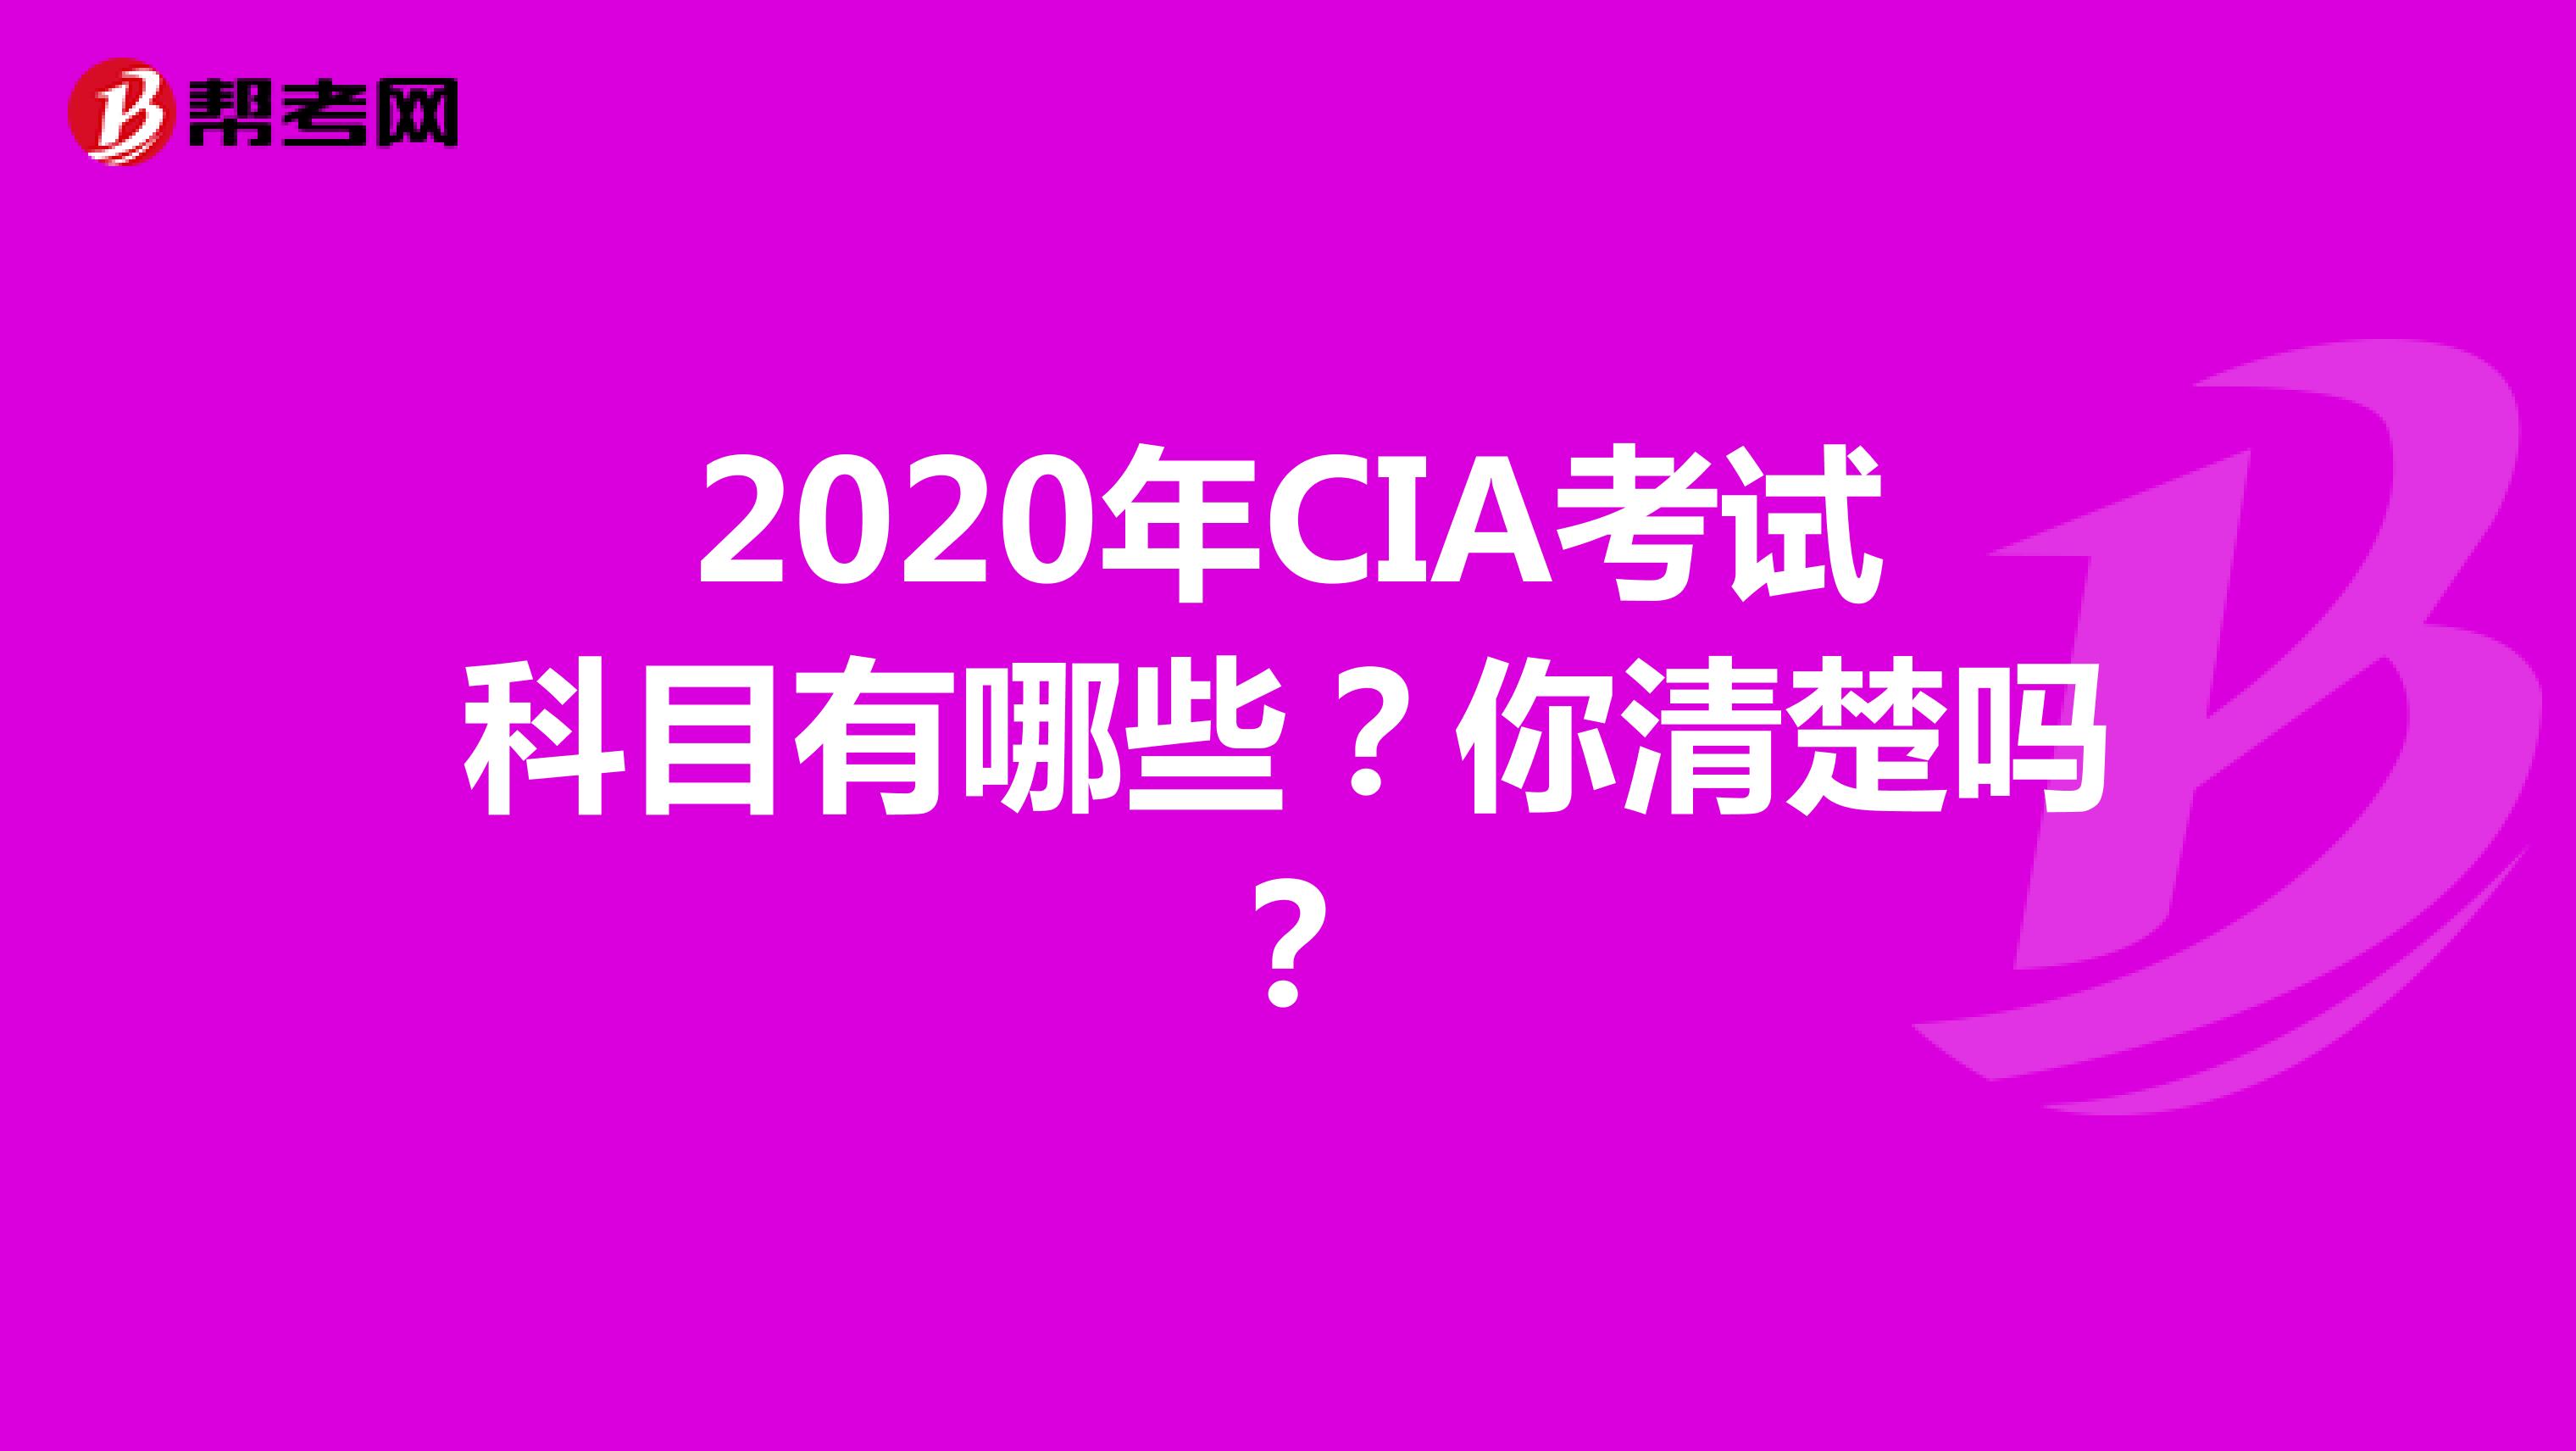 2020年CIA考试科目有哪些？你清楚吗？